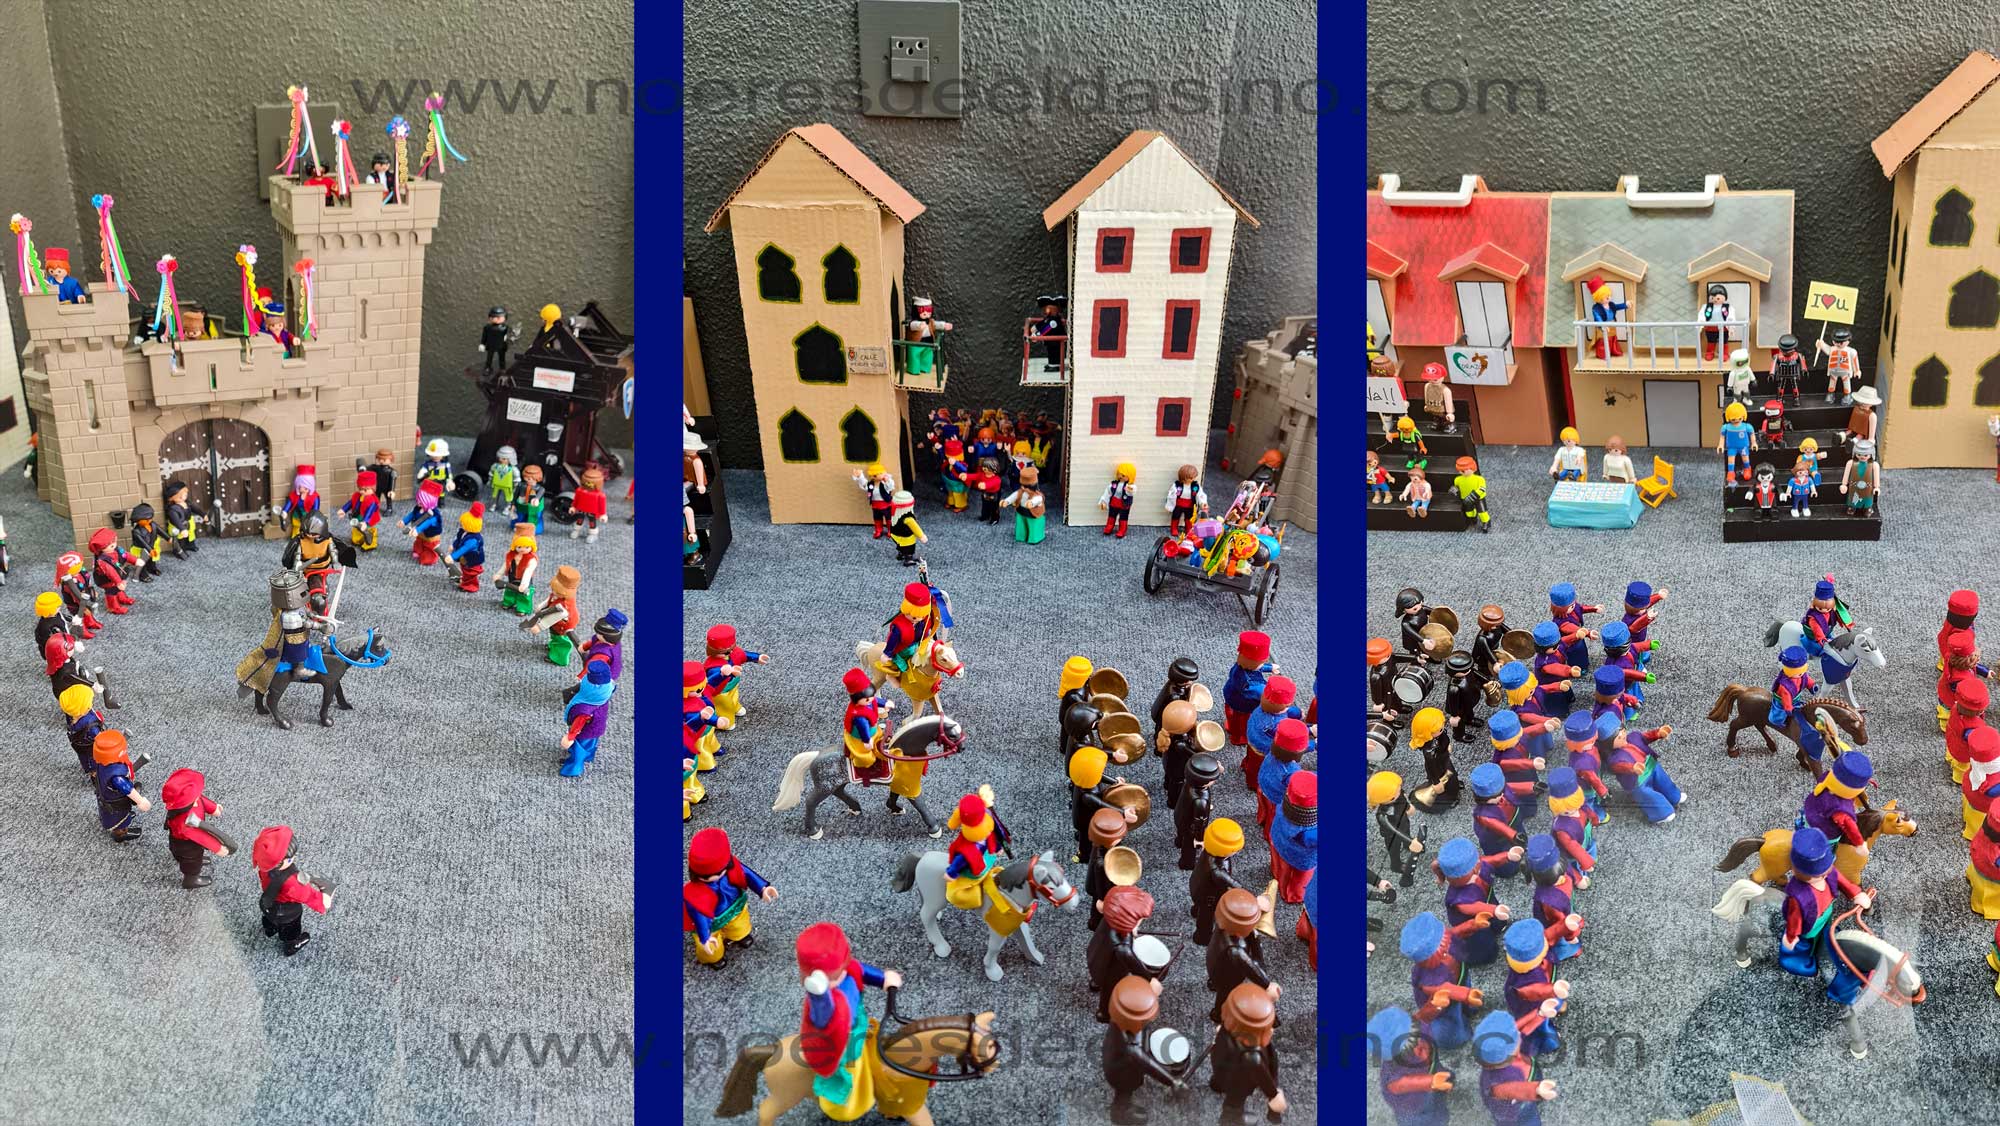 Los Moros y Cristianos de Elda de Playmobil vuelven este 2023 a Juguettos de la calle Nueva